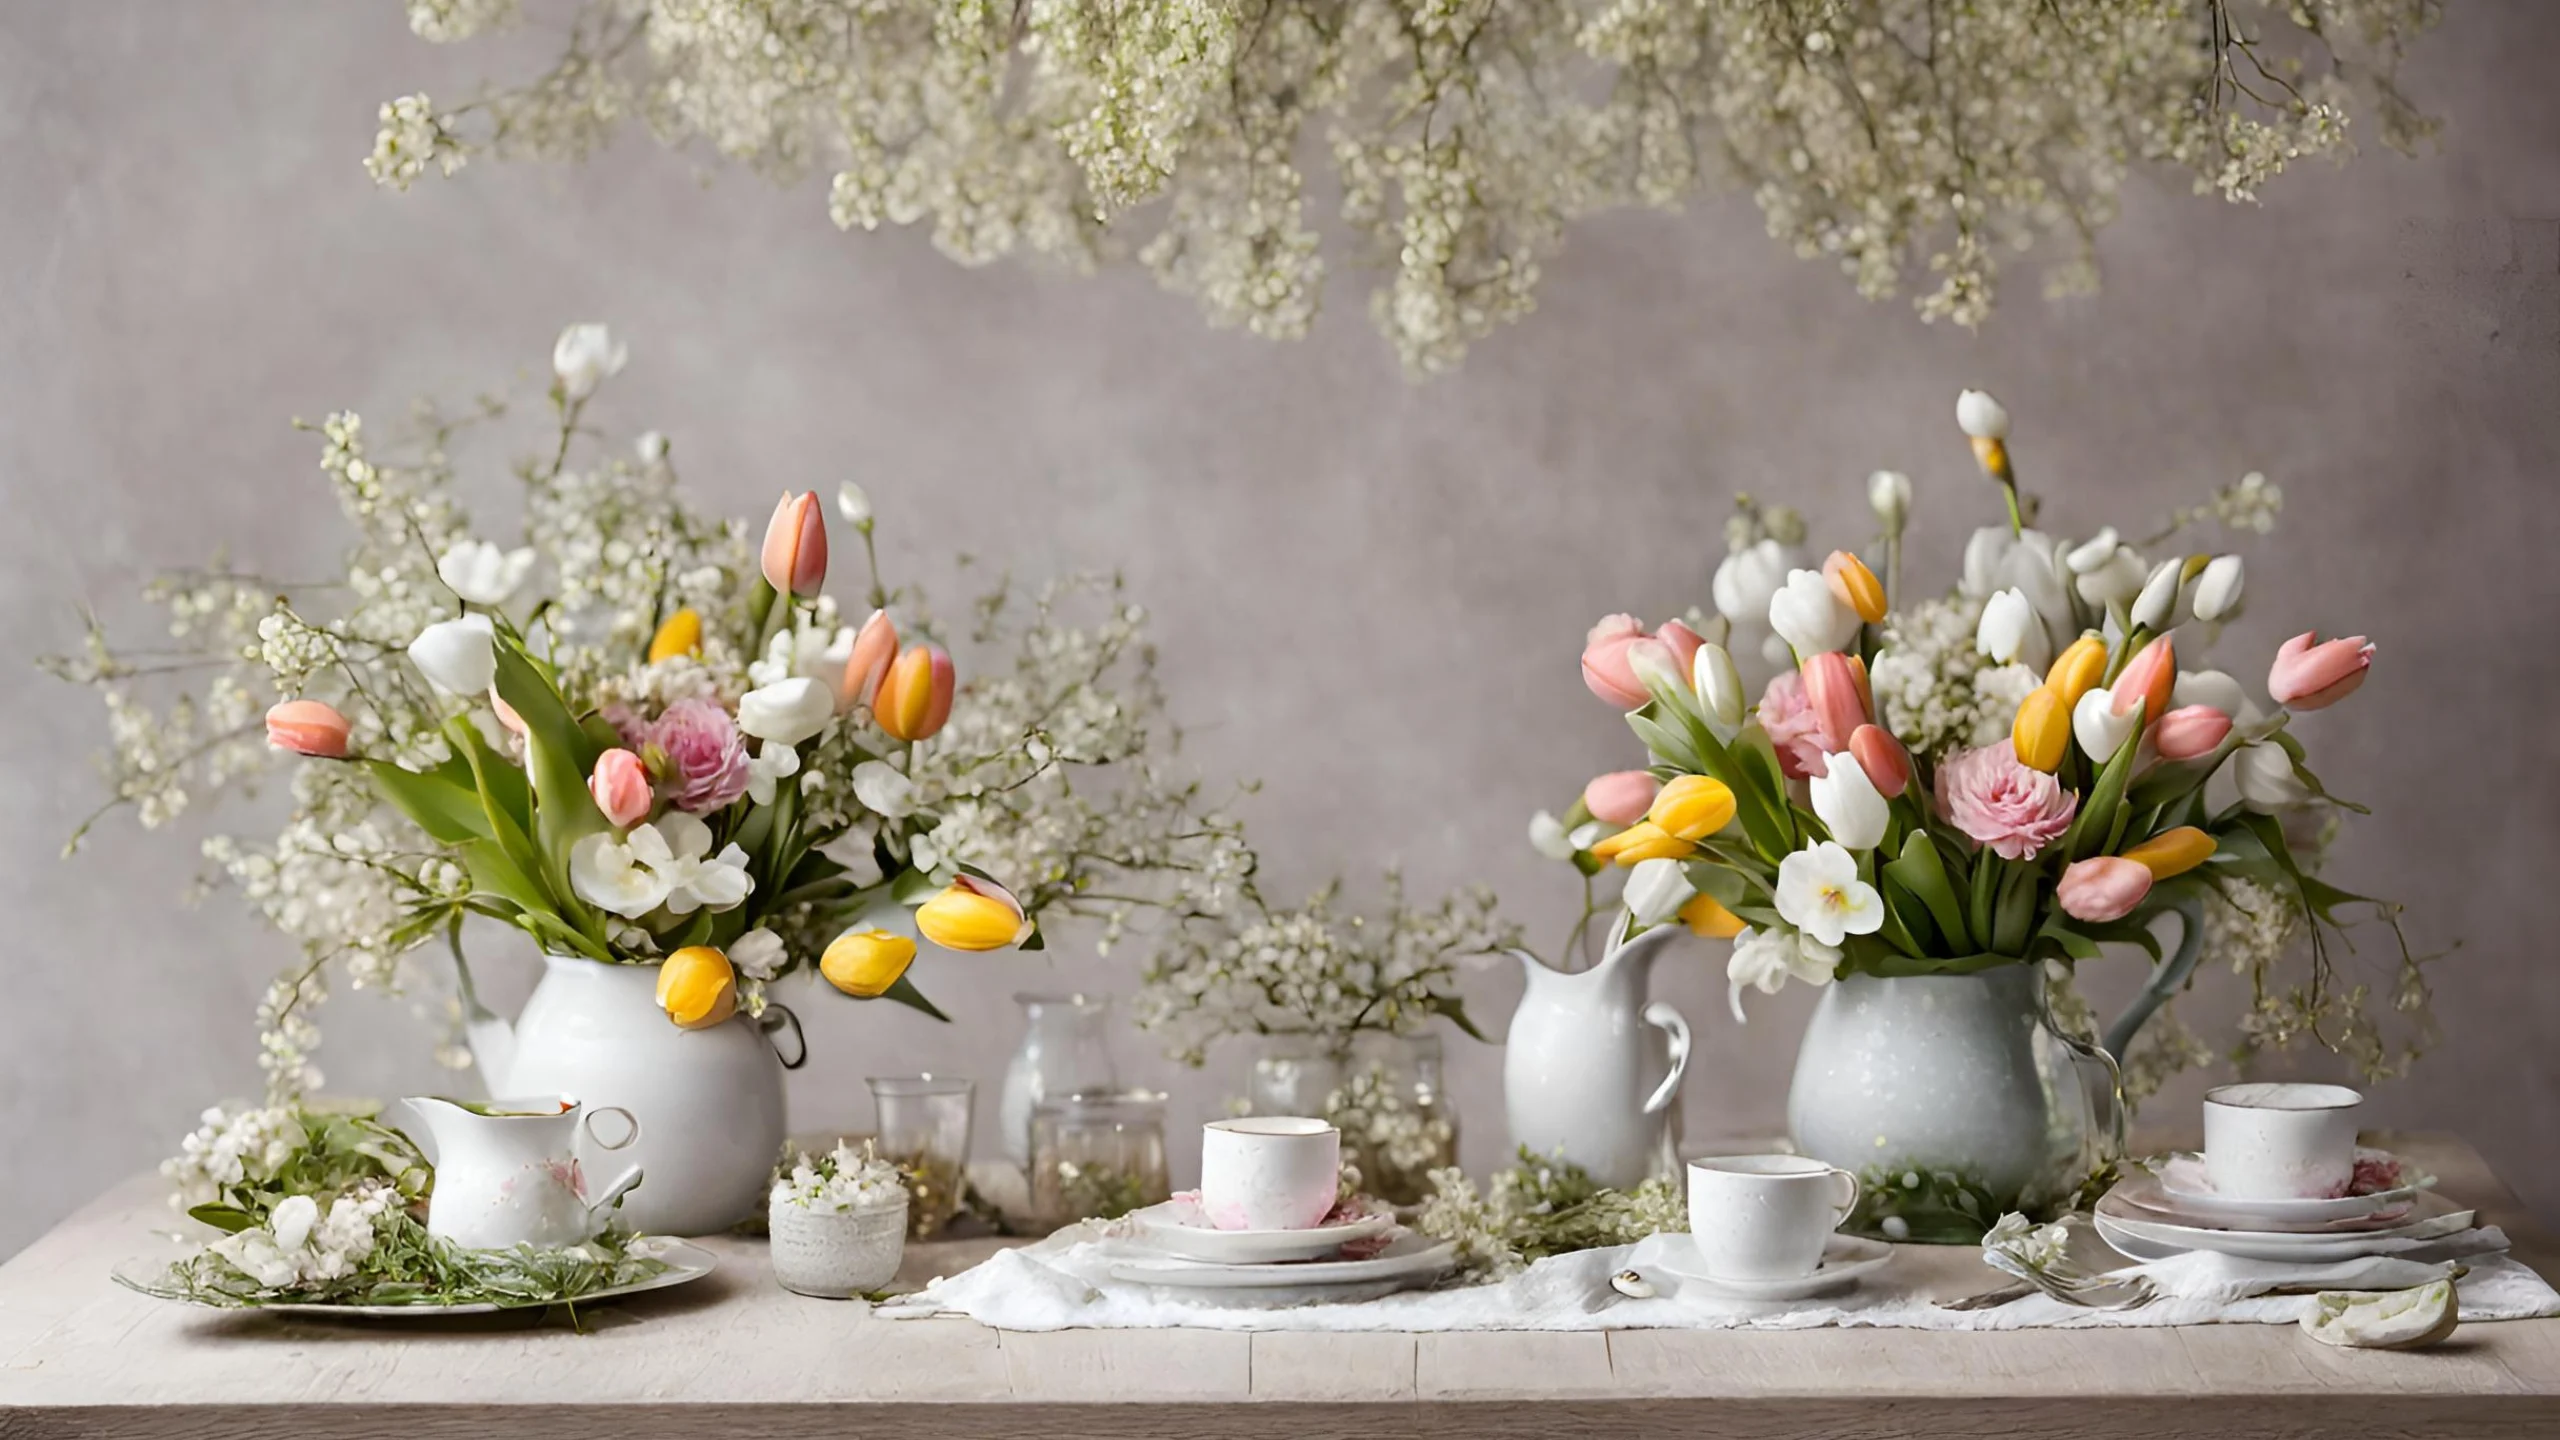 Consejos para decorar tu mesa de manera fresca, vibrante y acogedora